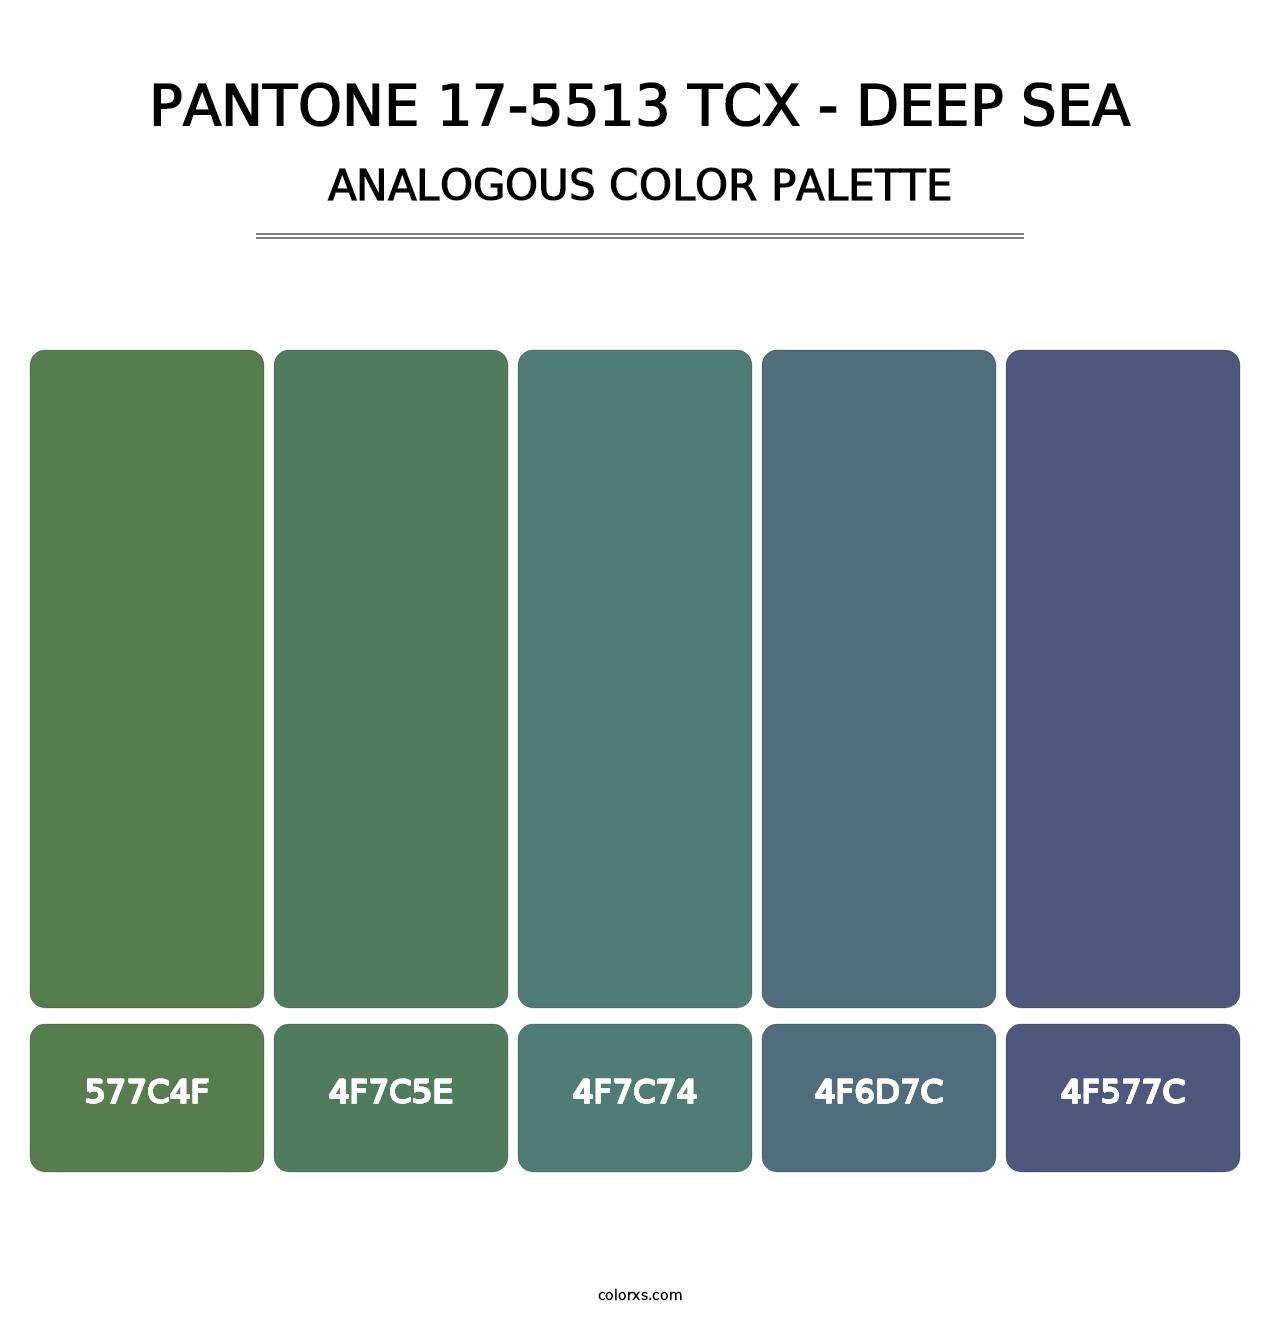 PANTONE 17-5513 TCX - Deep Sea - Analogous Color Palette